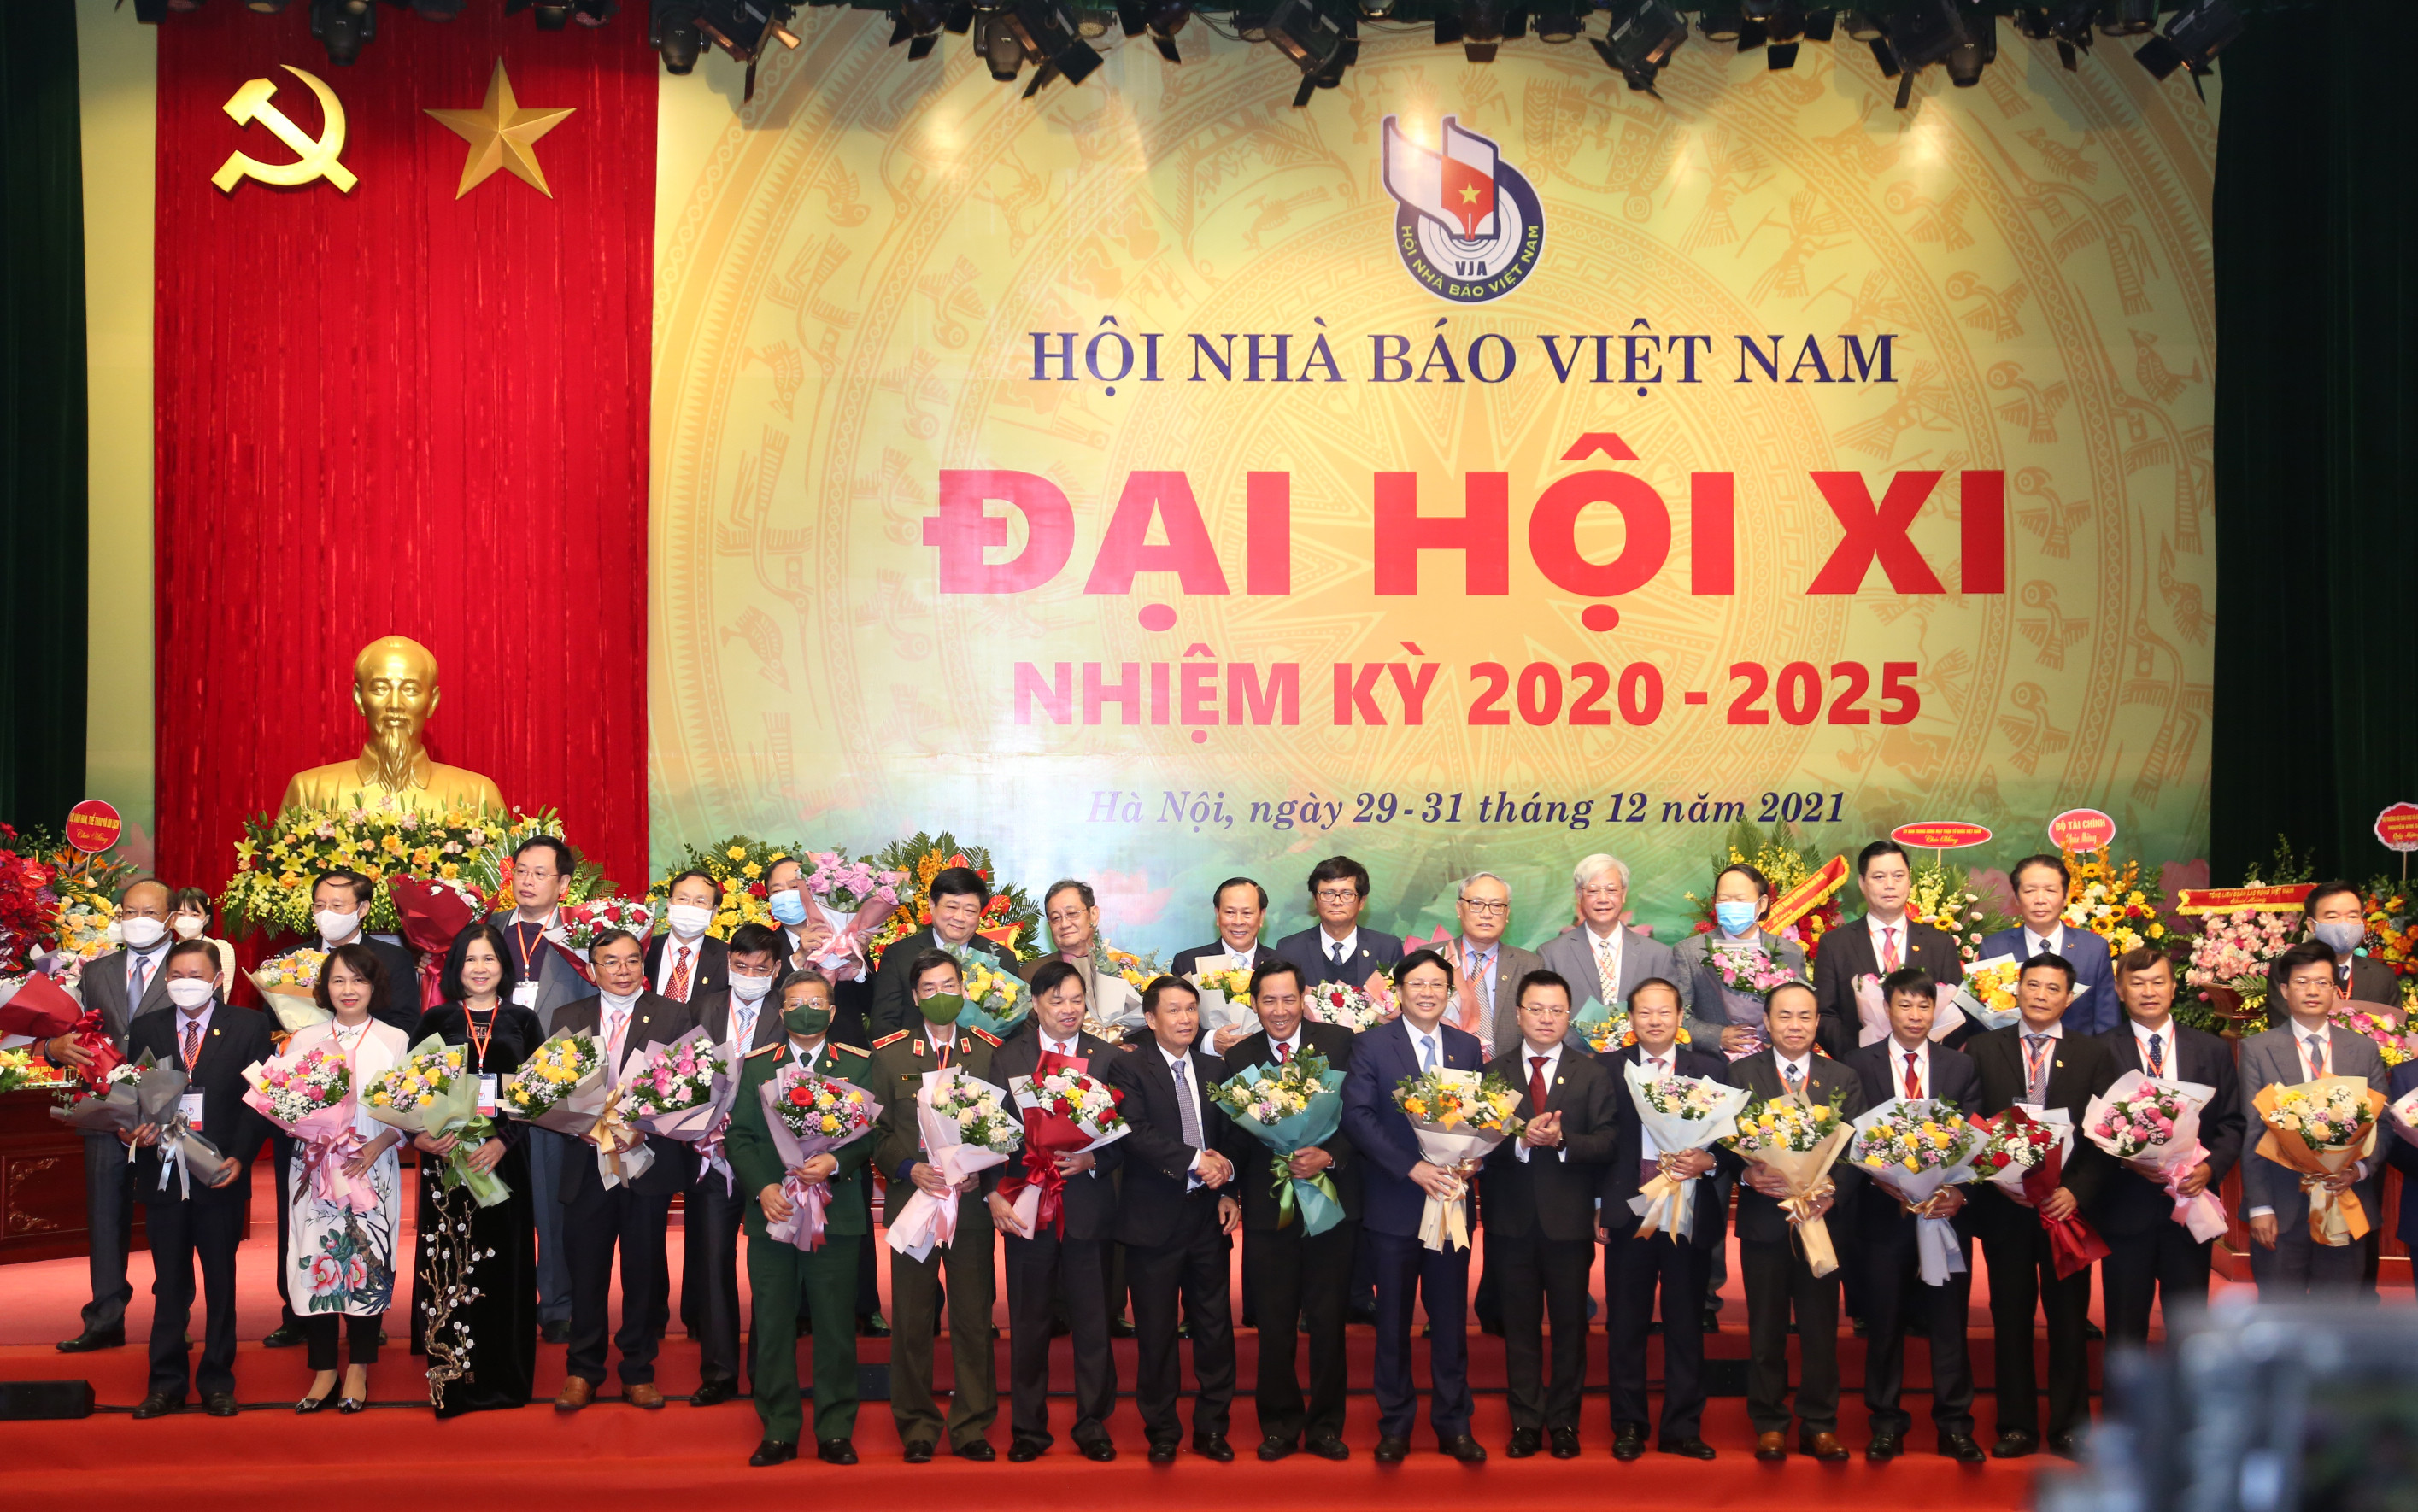 Tặng hoa chúc mừng BCH Hội Nhà báo Việt Nam khóa X, nhiệm kỳ 2015-2020 hoàn thành niệm vụ. Ảnh: Đào Tuấn